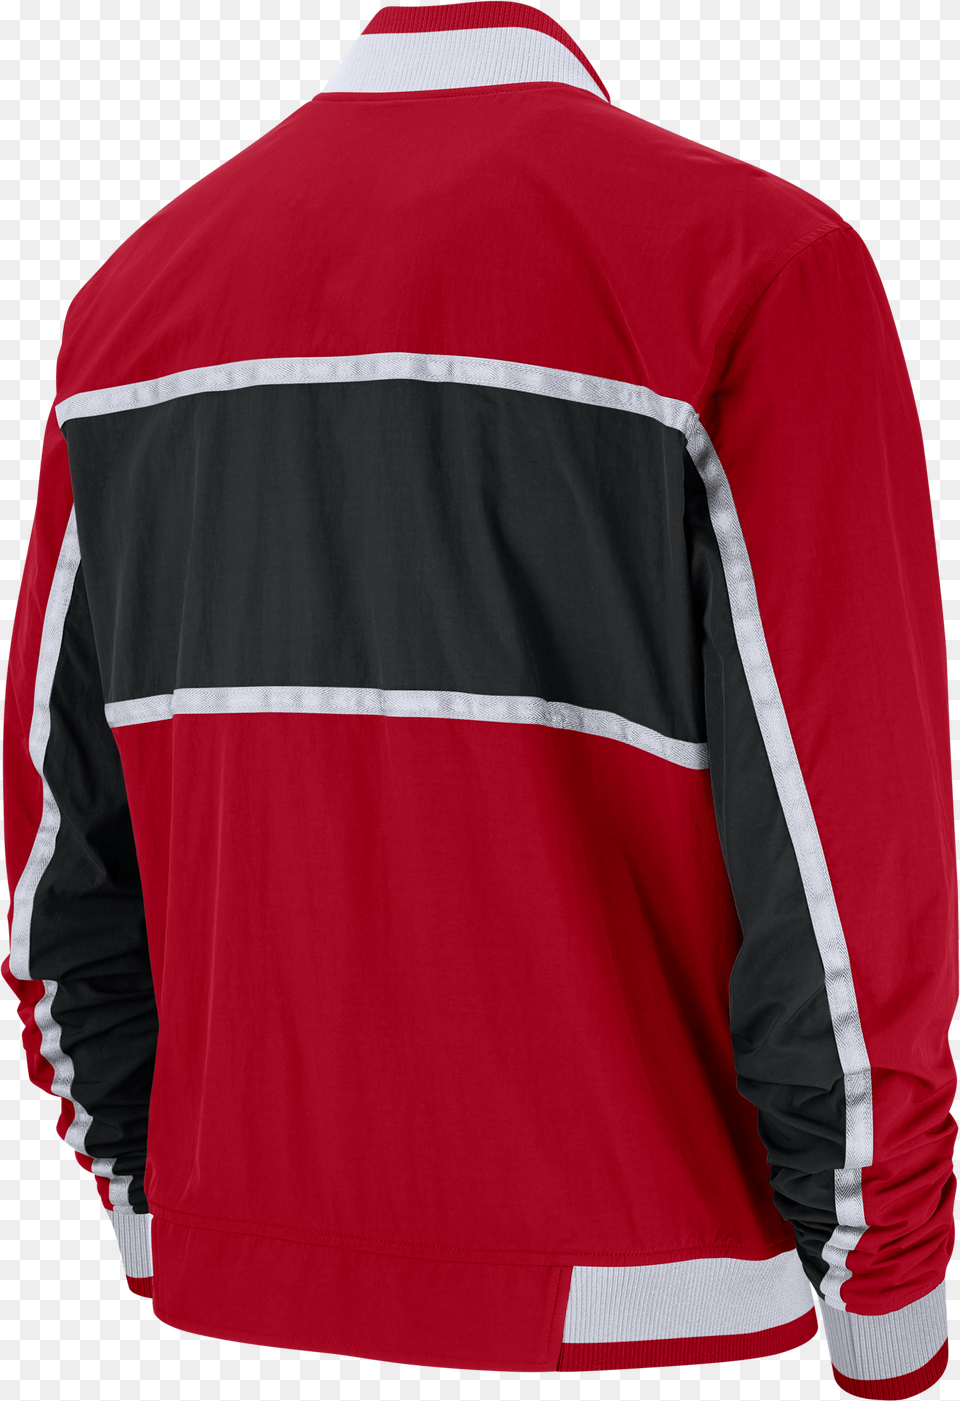 Nike Nba Chicago Bulls Courtside Icon Jacket Long Sleeve, Clothing, Coat, Shirt, Long Sleeve Free Png